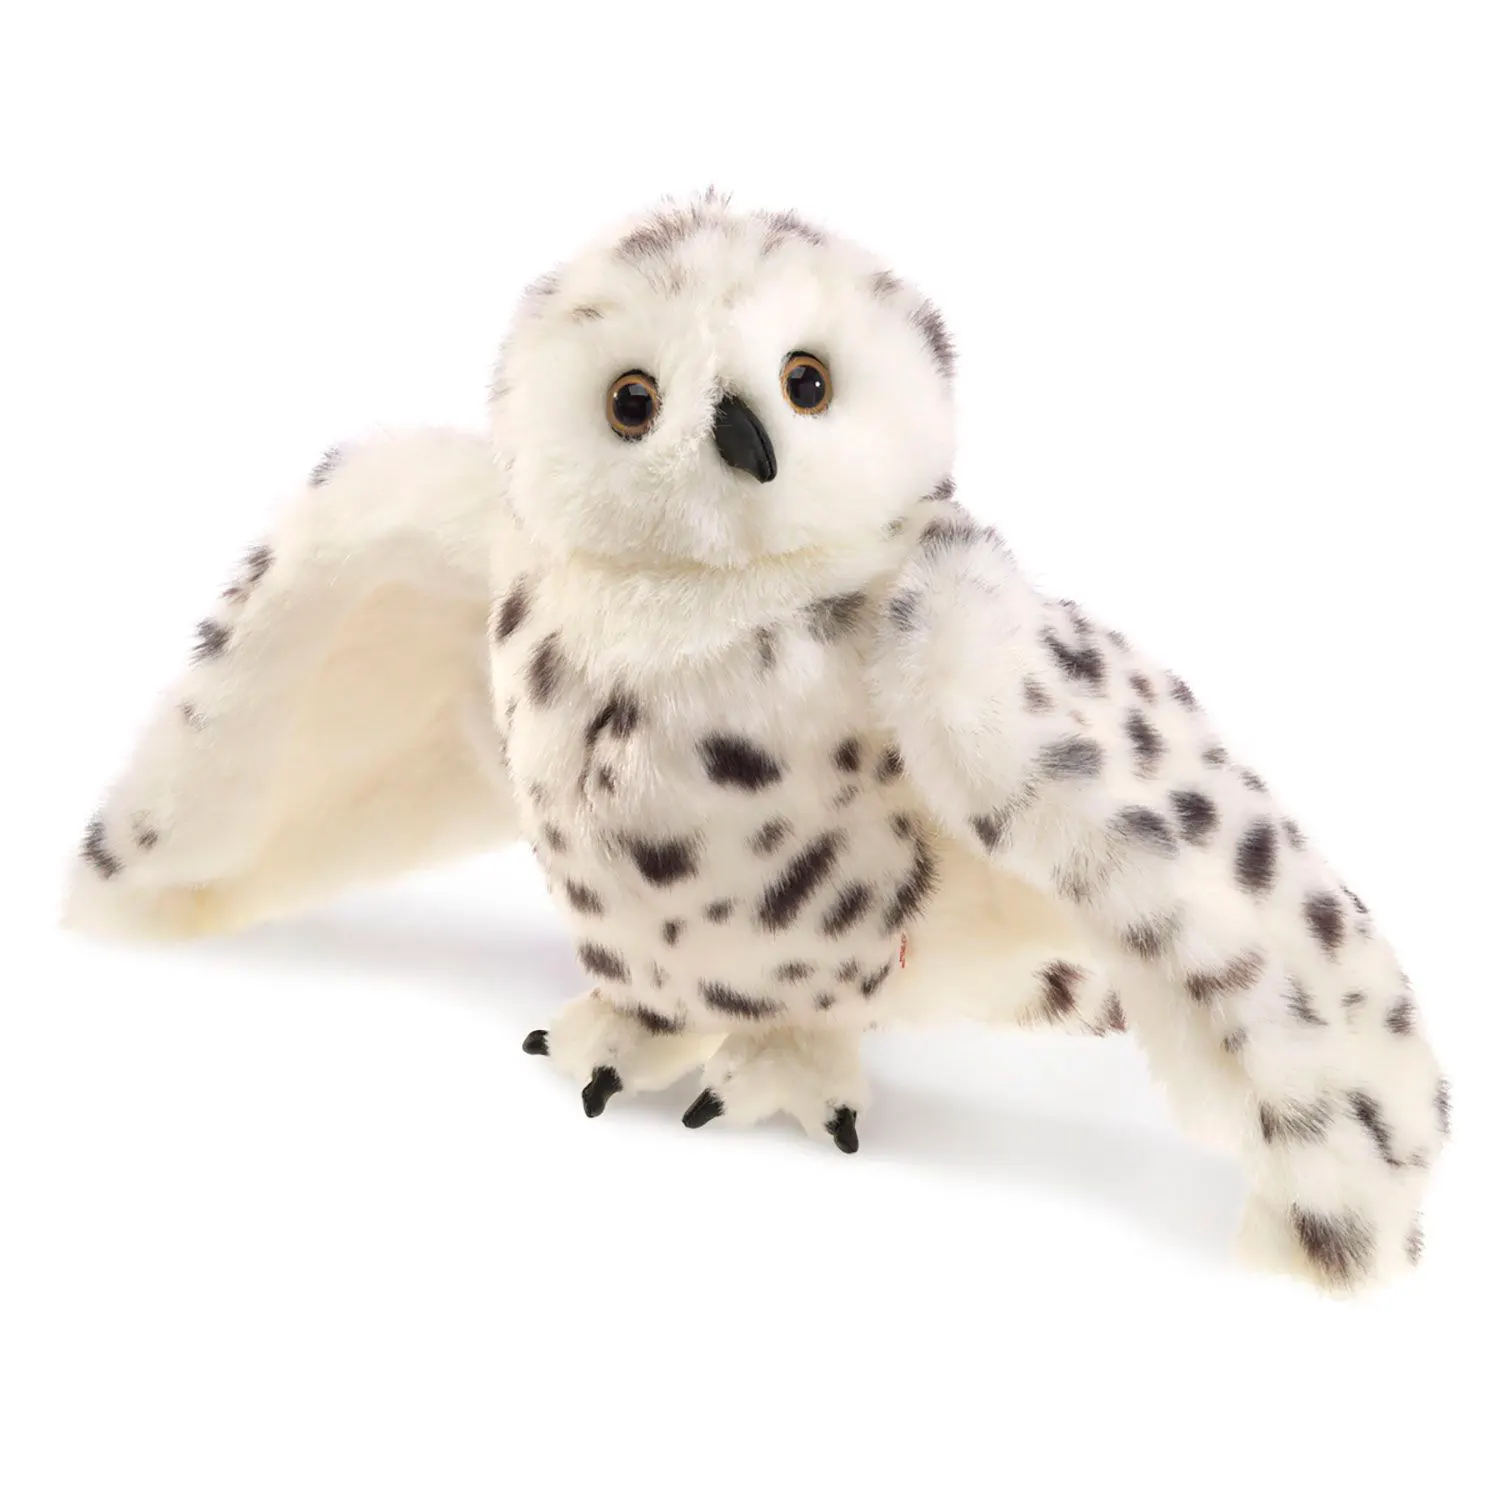 Schnee-Eule / Snowy Owl